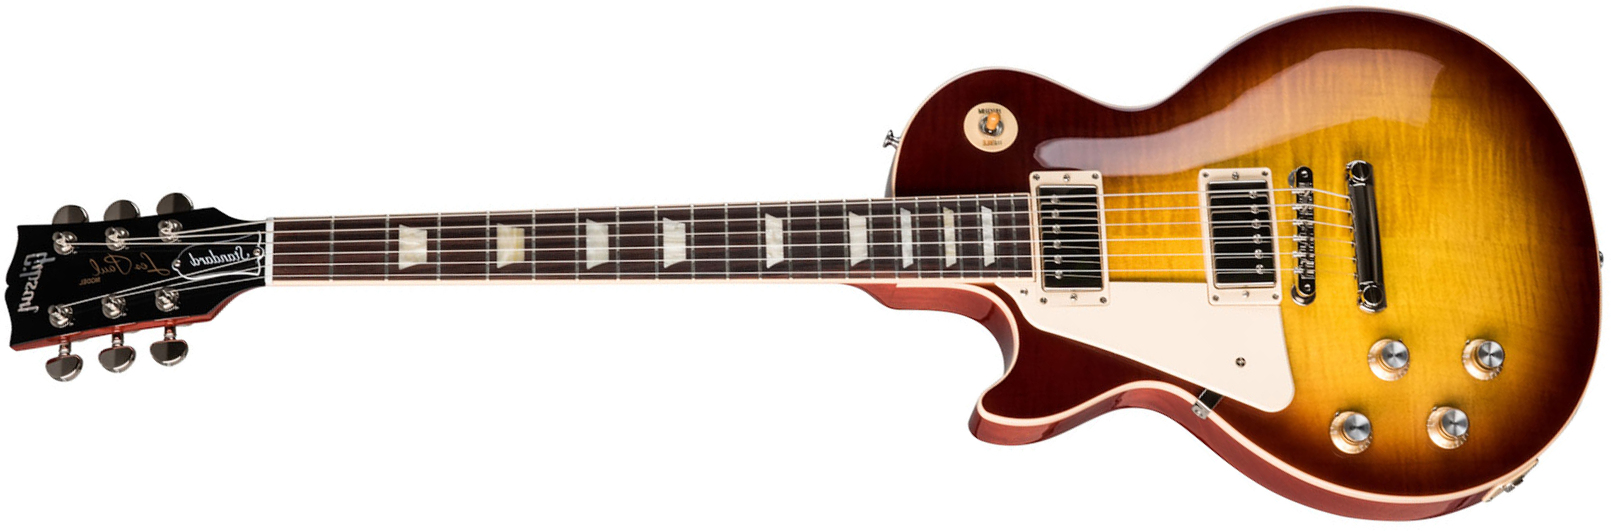 Gibson Les Paul Standard 60s Lh Gaucher 2h Ht Rw - Iced Tea - Linkshandige elektrische gitaar - Main picture